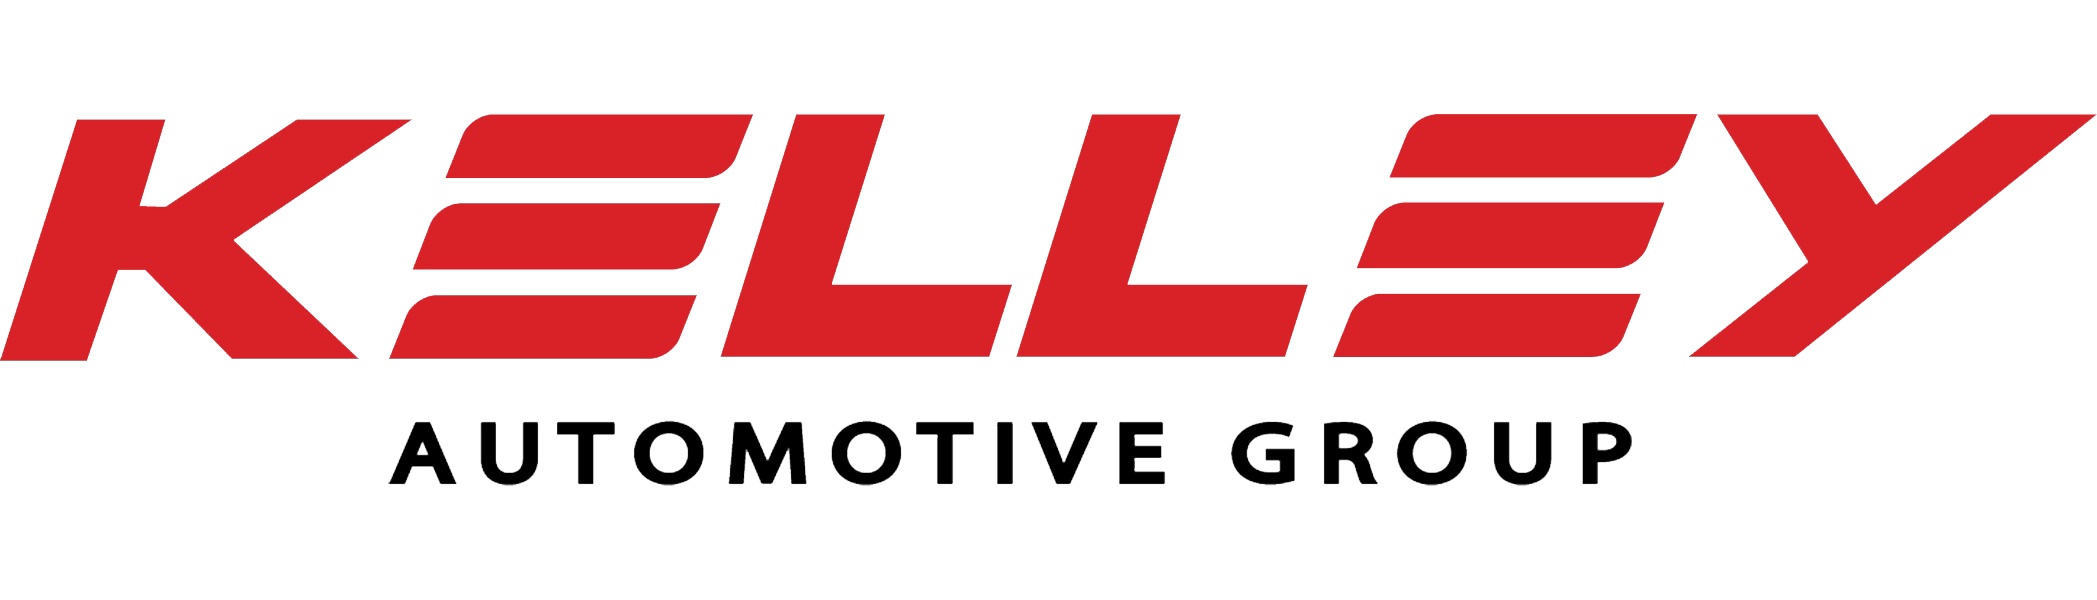 Kelley Automotive Group logo